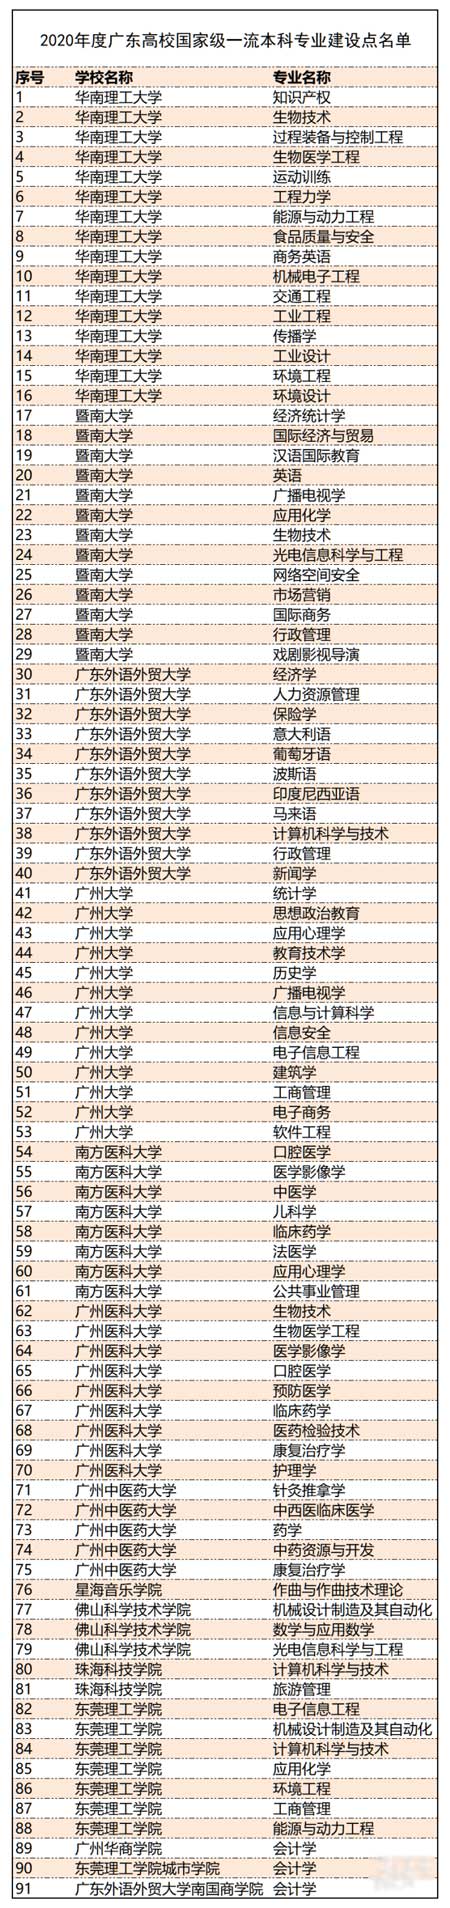 2020年度广东高校国家级一流本科专业建设点名单